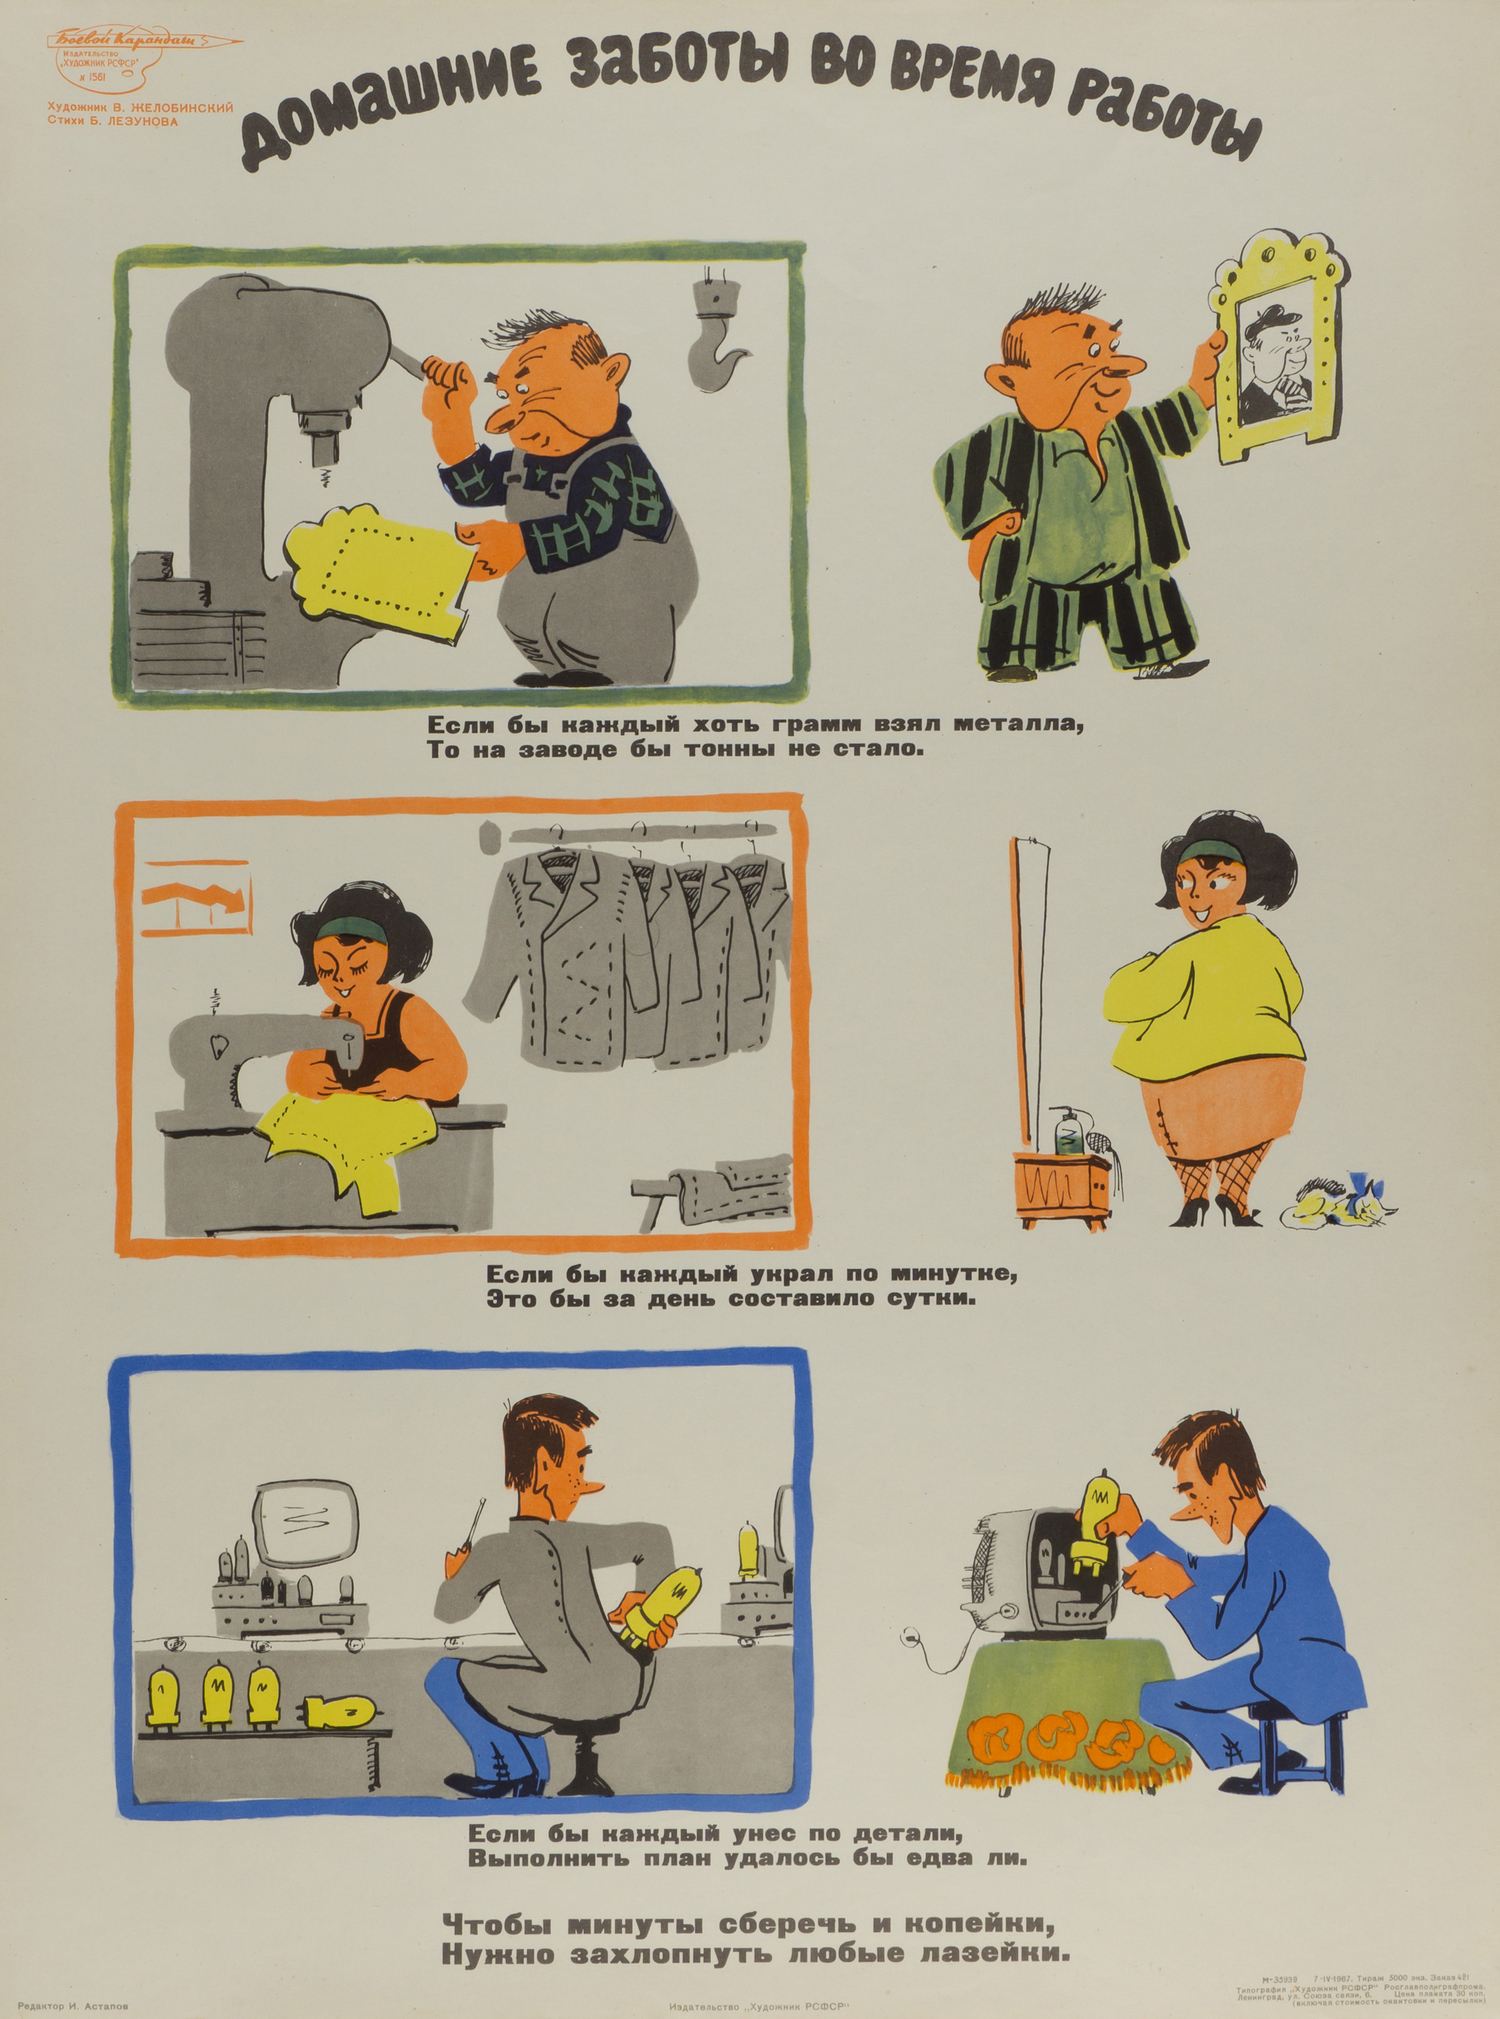 («Боевой карандаш») Желобинский В.В. Плакат «Домашние заботы во время работы» (Л., 1967).